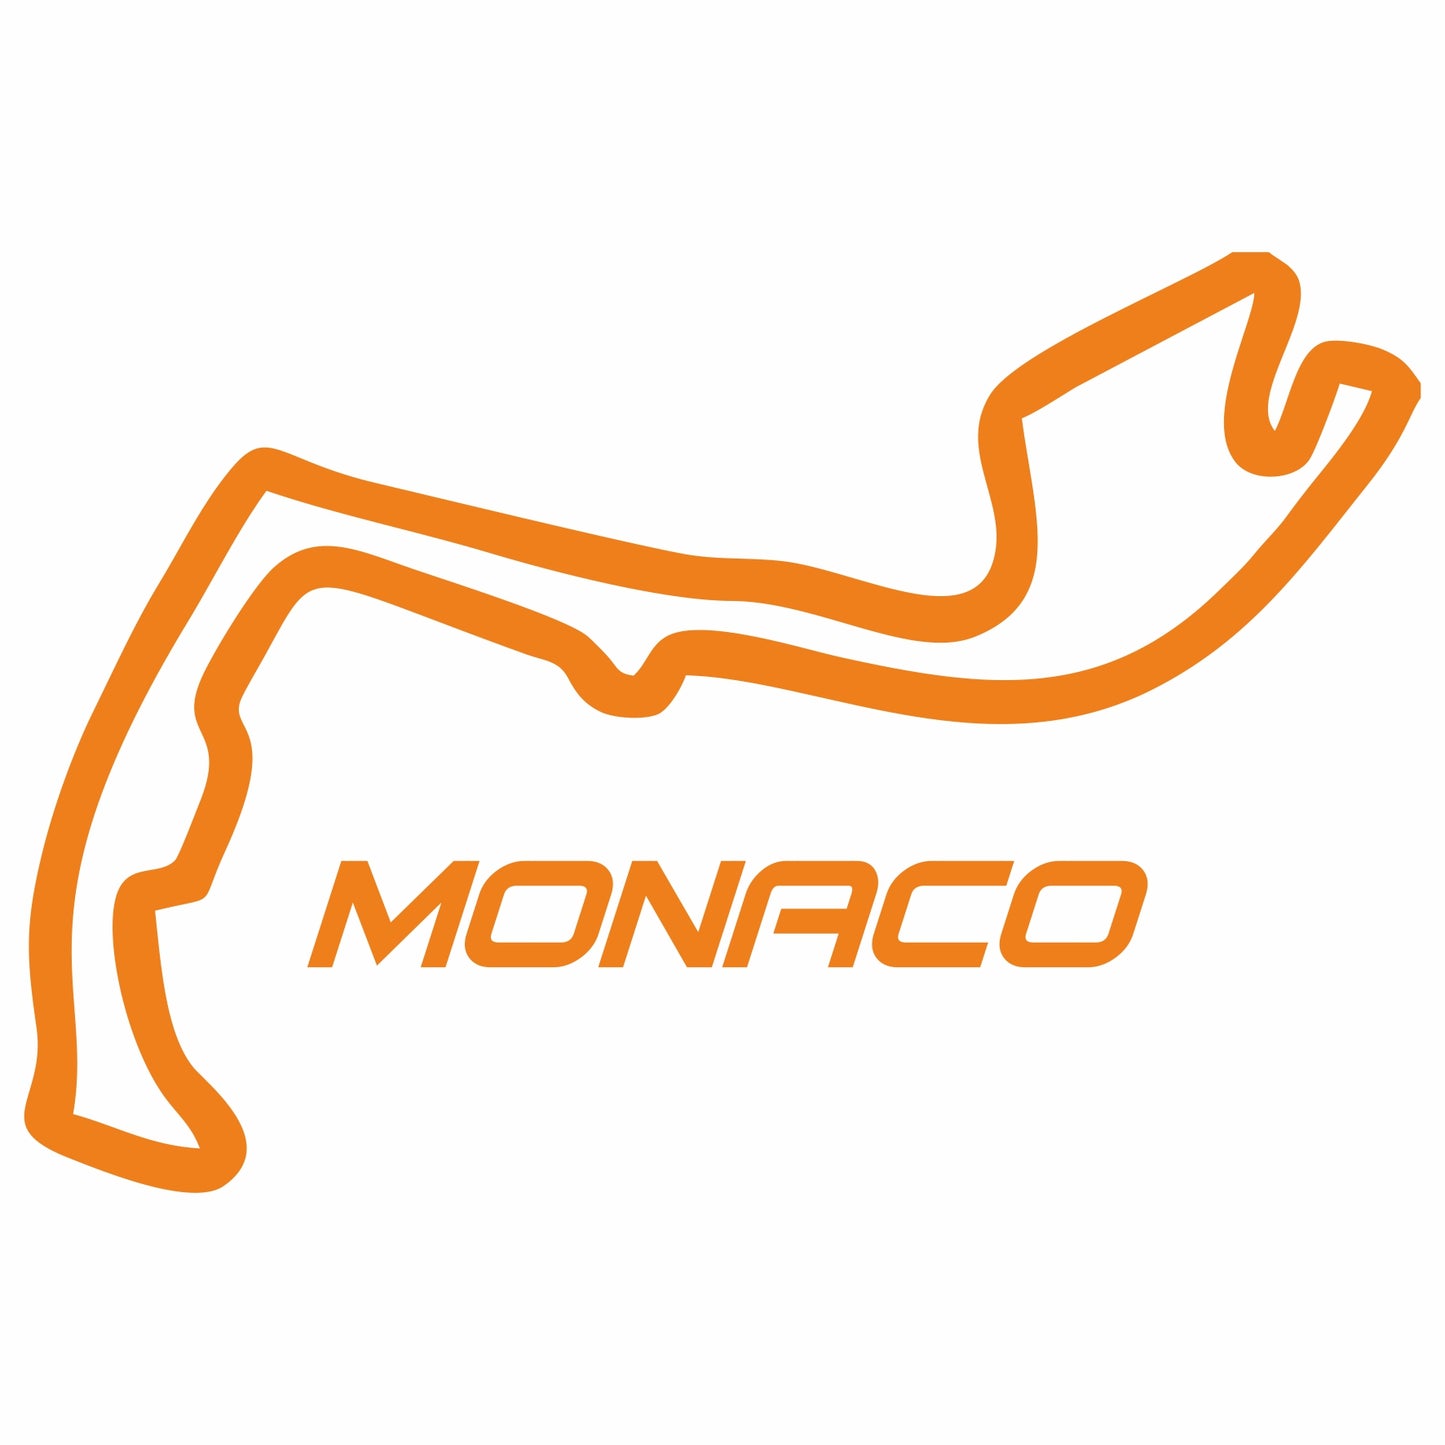 Monaco Sticker